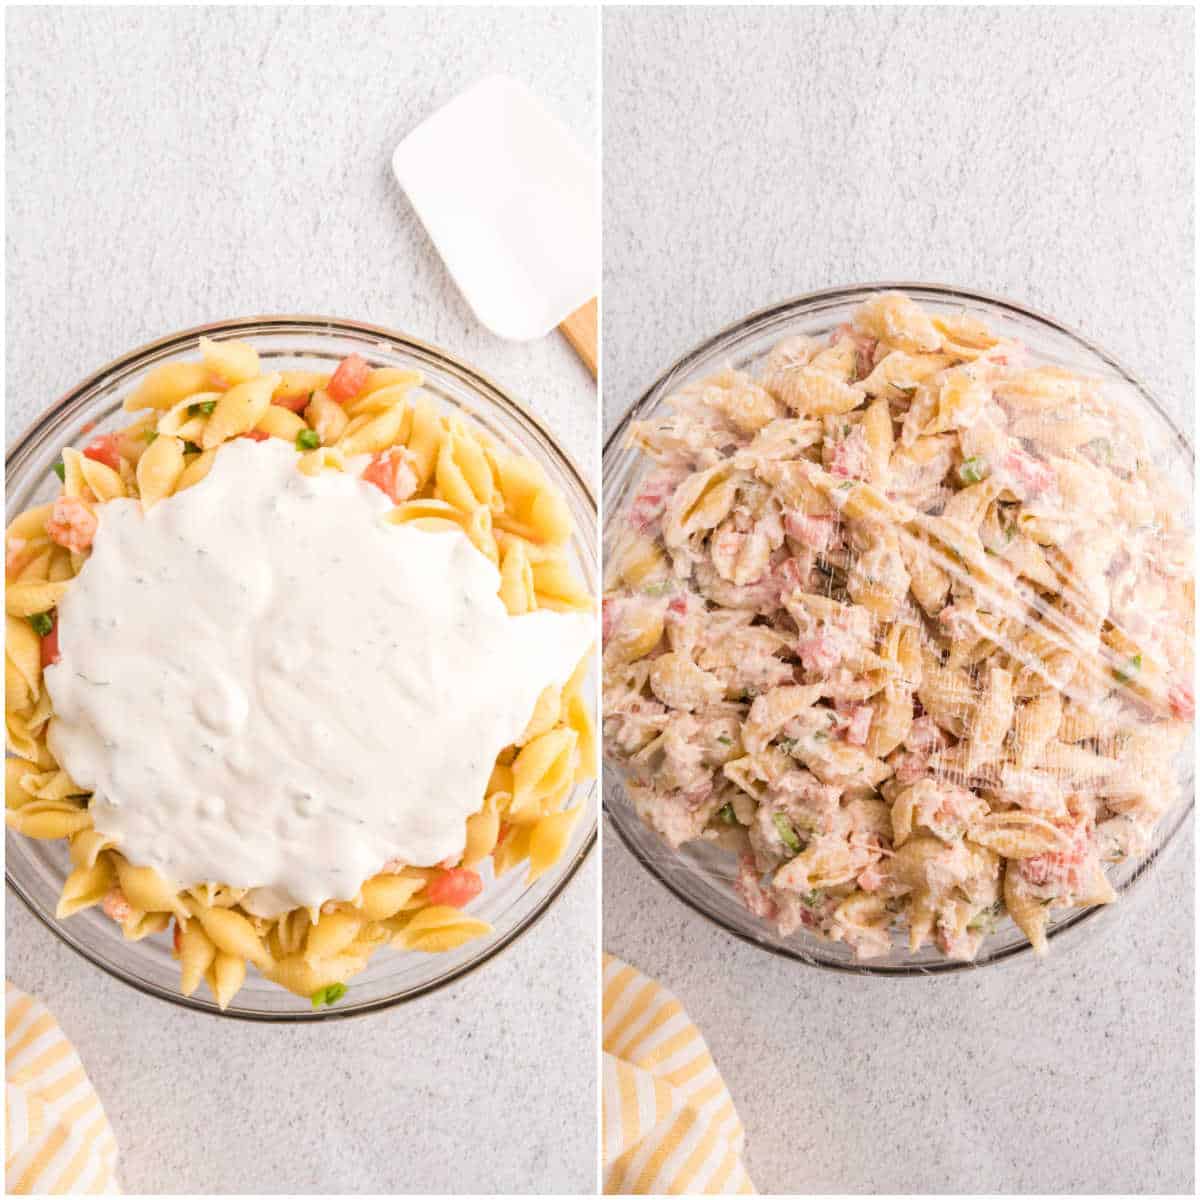 Steps to make shrimp pasta salad.